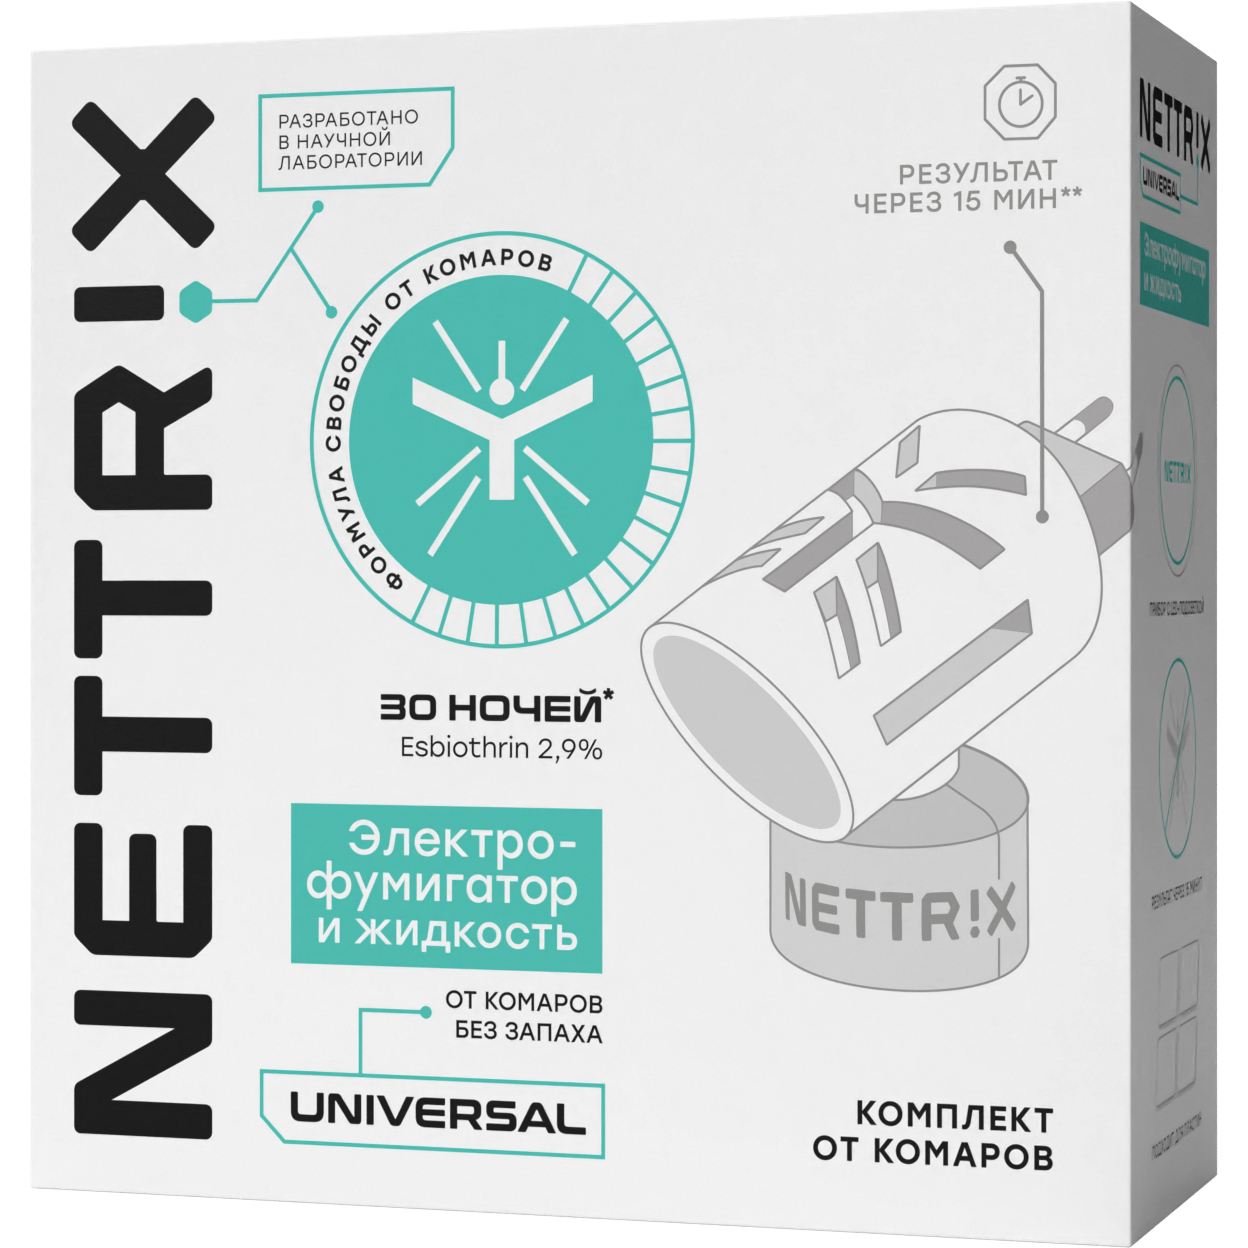 Комплект от комаров Nettrix Universal фумигатор с жидкостью на 30 ночей nettrix пластины от комаров длительного действия universal 10